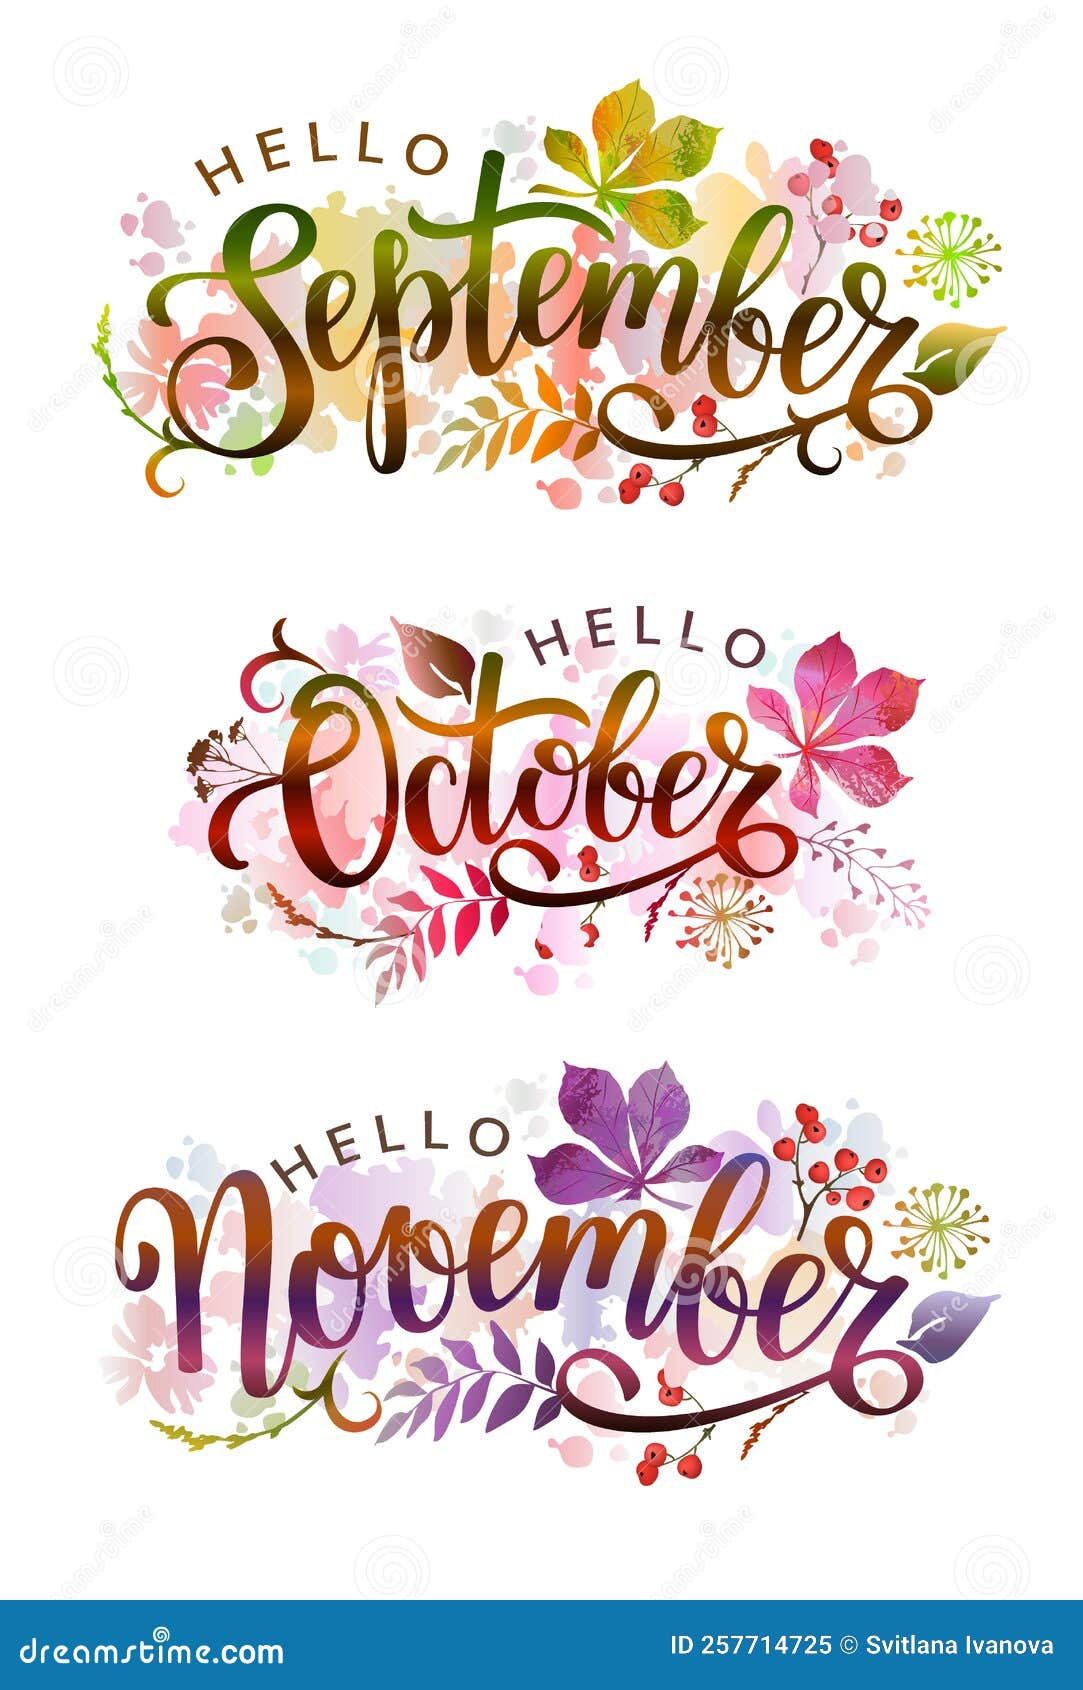 Hello September October November Handwritten Lettering With Autumn